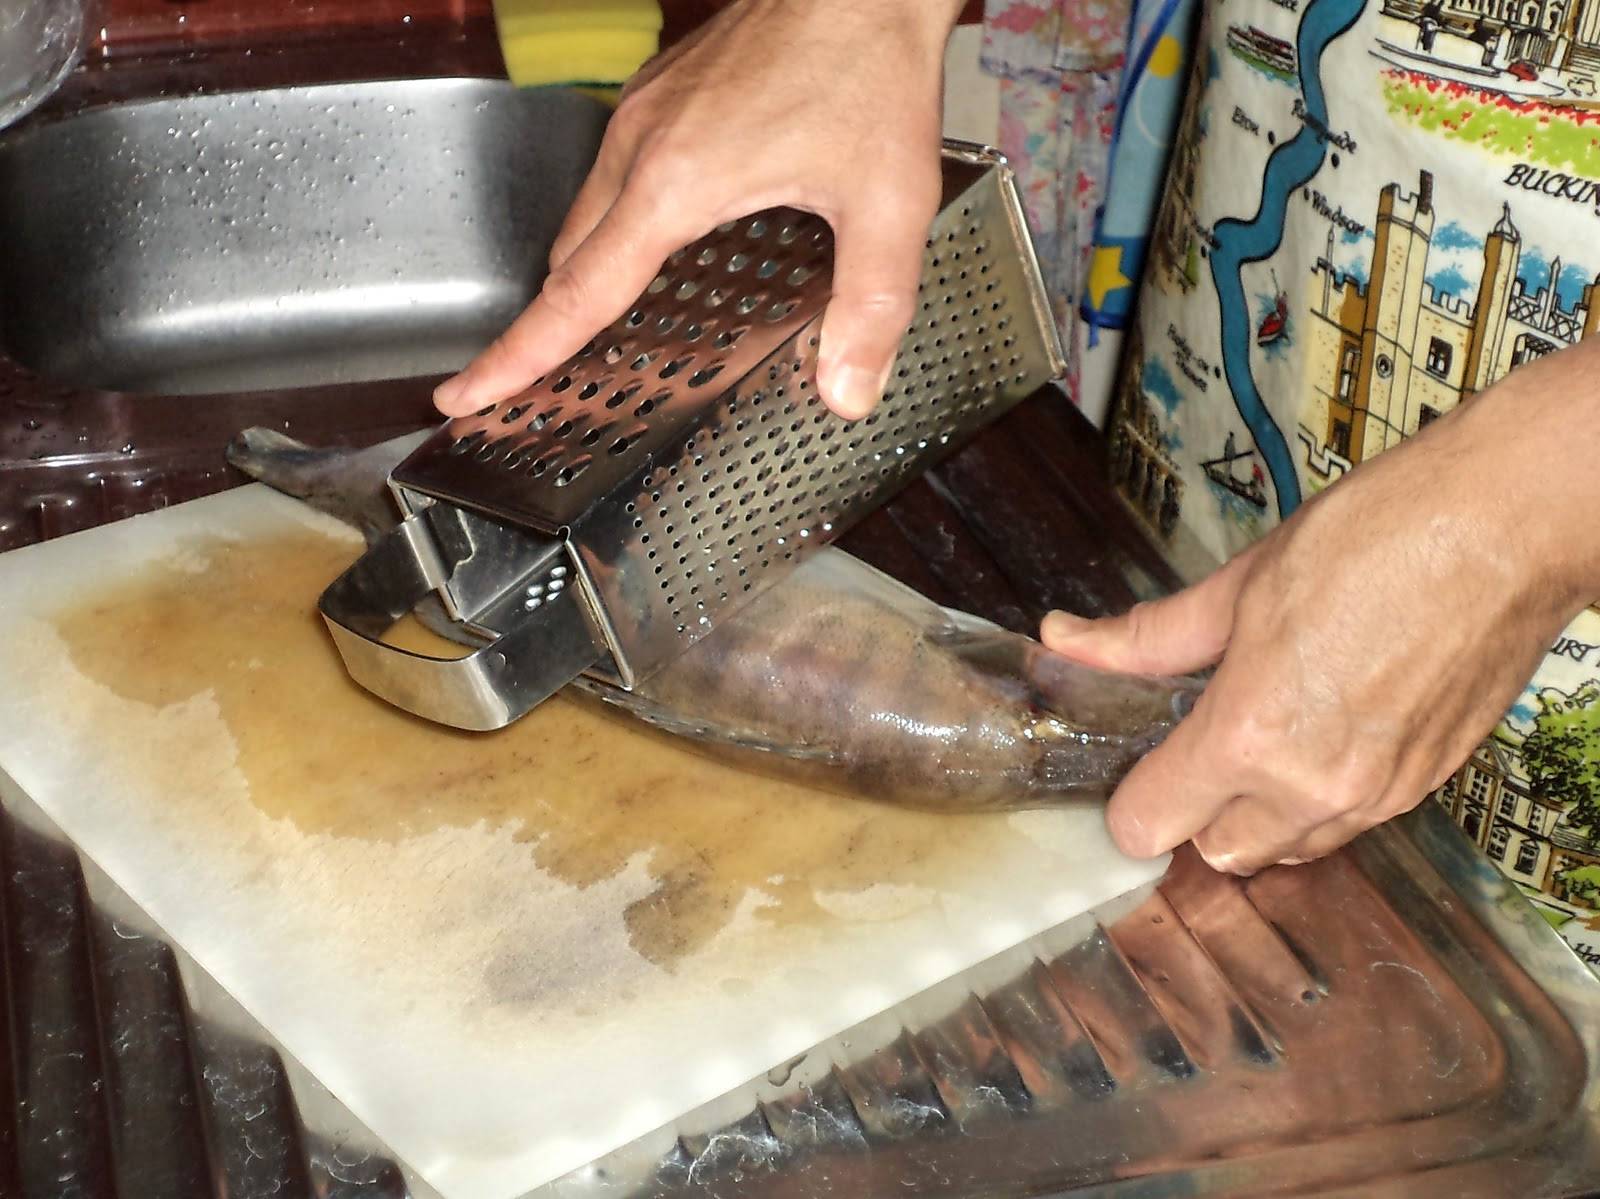 Как почистить рыбу от чешуи быстро. как почистить рыбу в домашних условиях быстро. в данной статье описаны способы и небольшие хитрости по чистке рыбы в домашних условиях.